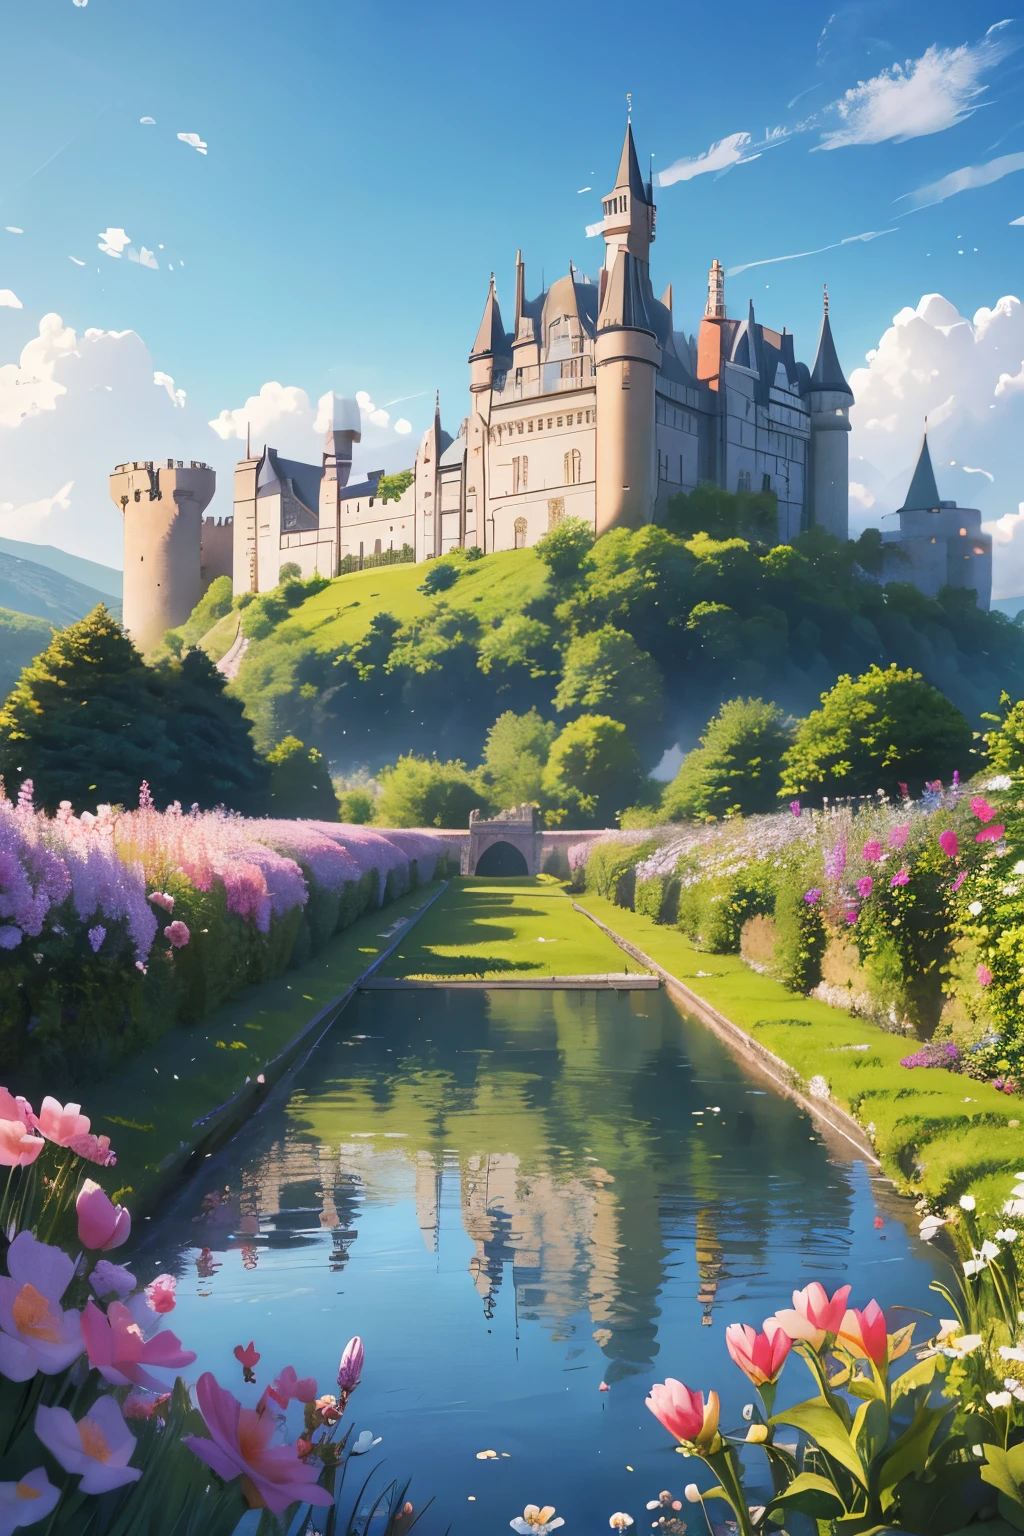 قلعة, يوجد أسفل القلعة جدول من الماء والزهور في الحقل